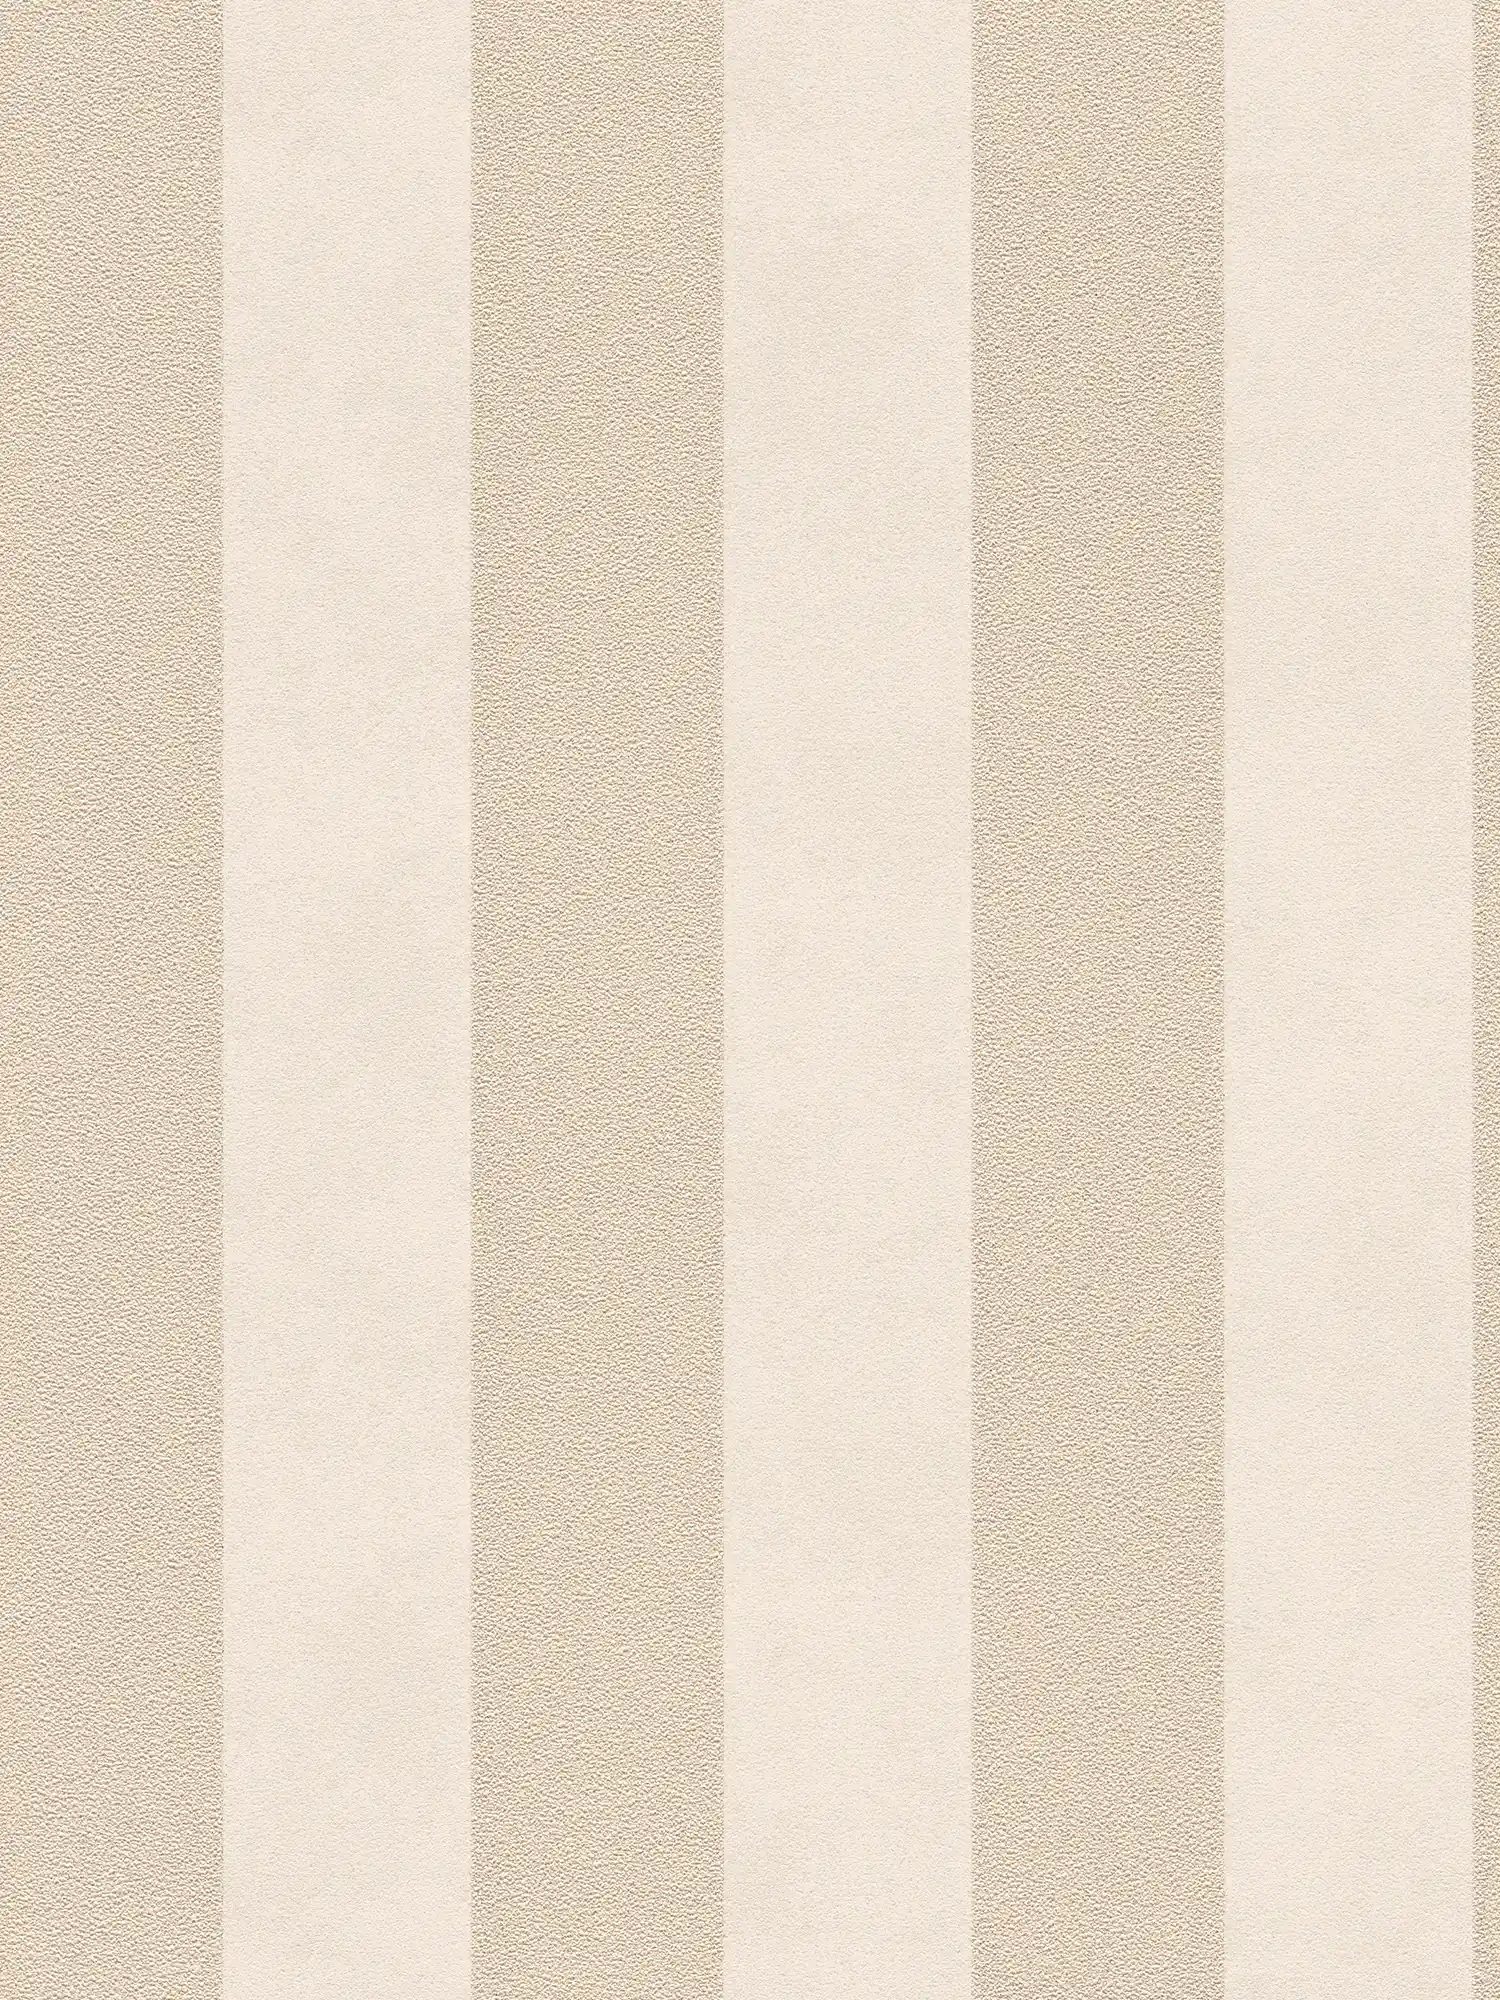 Papier peint à rayures en bloc avec motifs colorés et texturés - beige, or, crème
